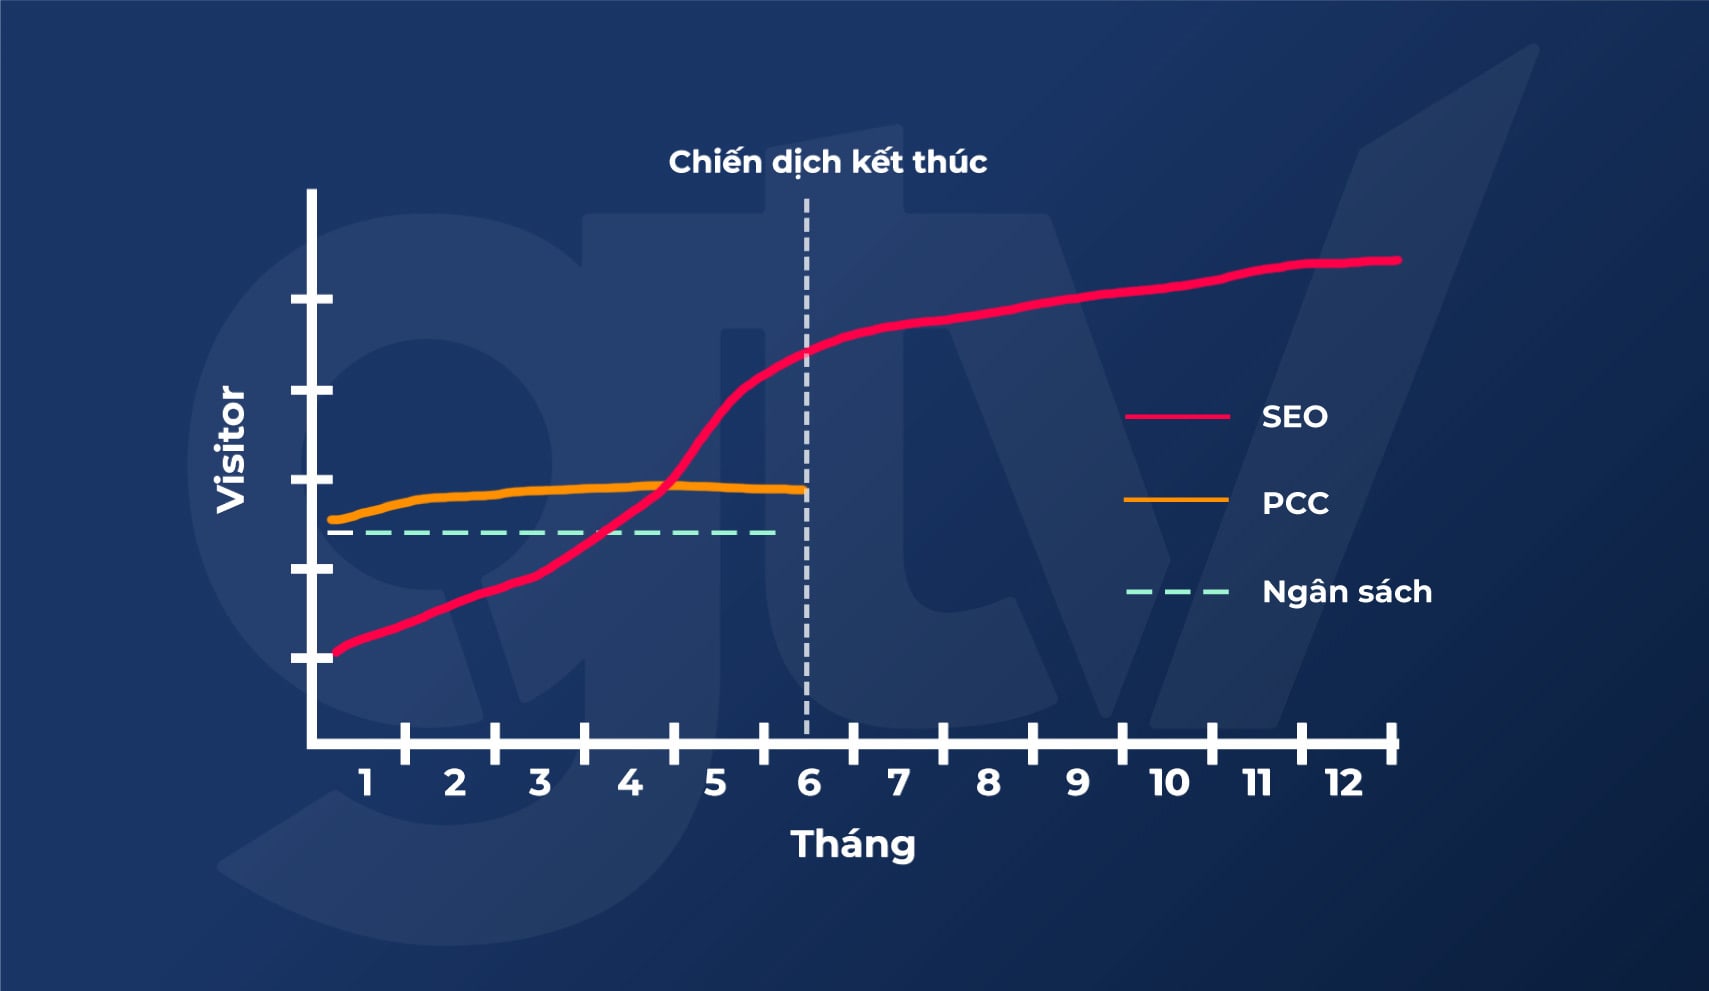 Hình minh họa biểu đồ so sánh ROI của kênh SEO và Paid Advertising